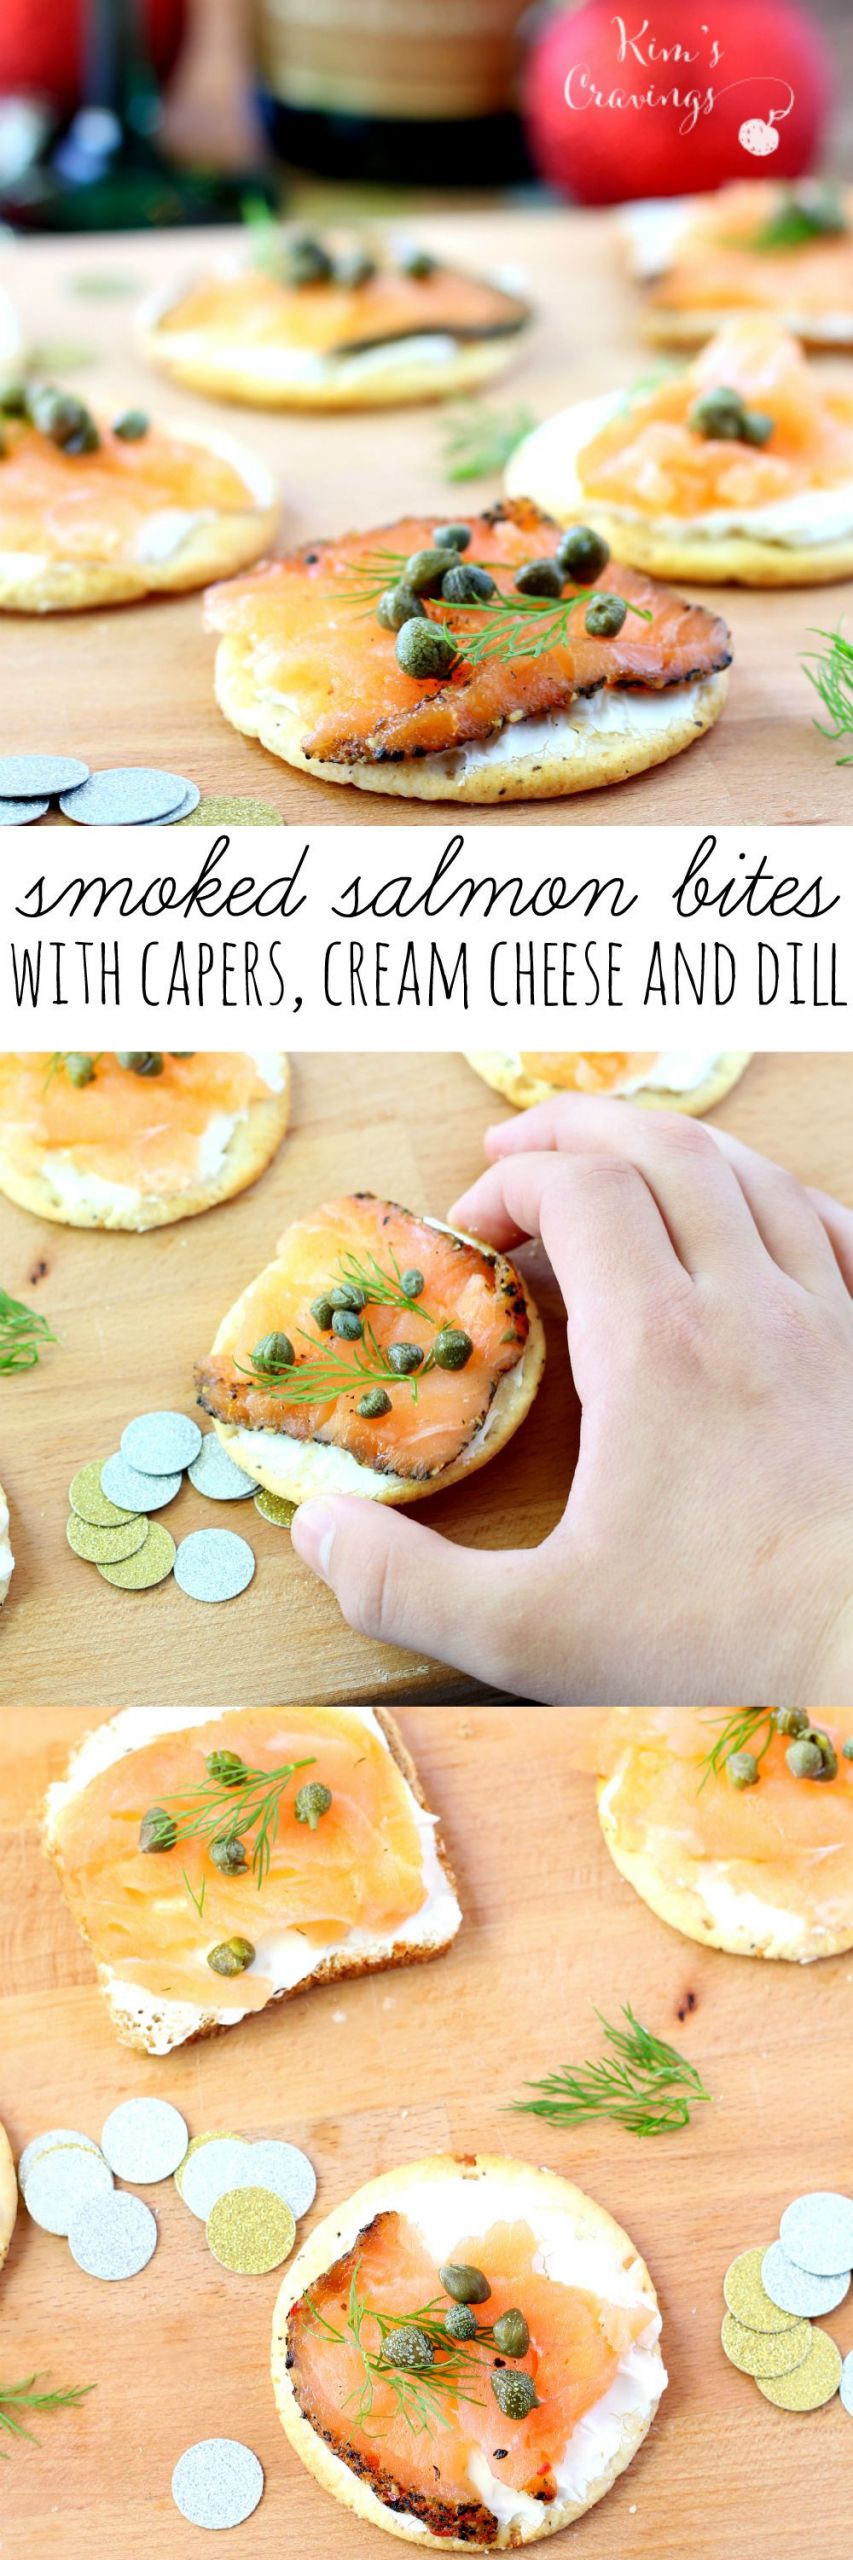 Smoked Salmon Appetizers Allrecipes
 Smoked Salmon Bites Recipe